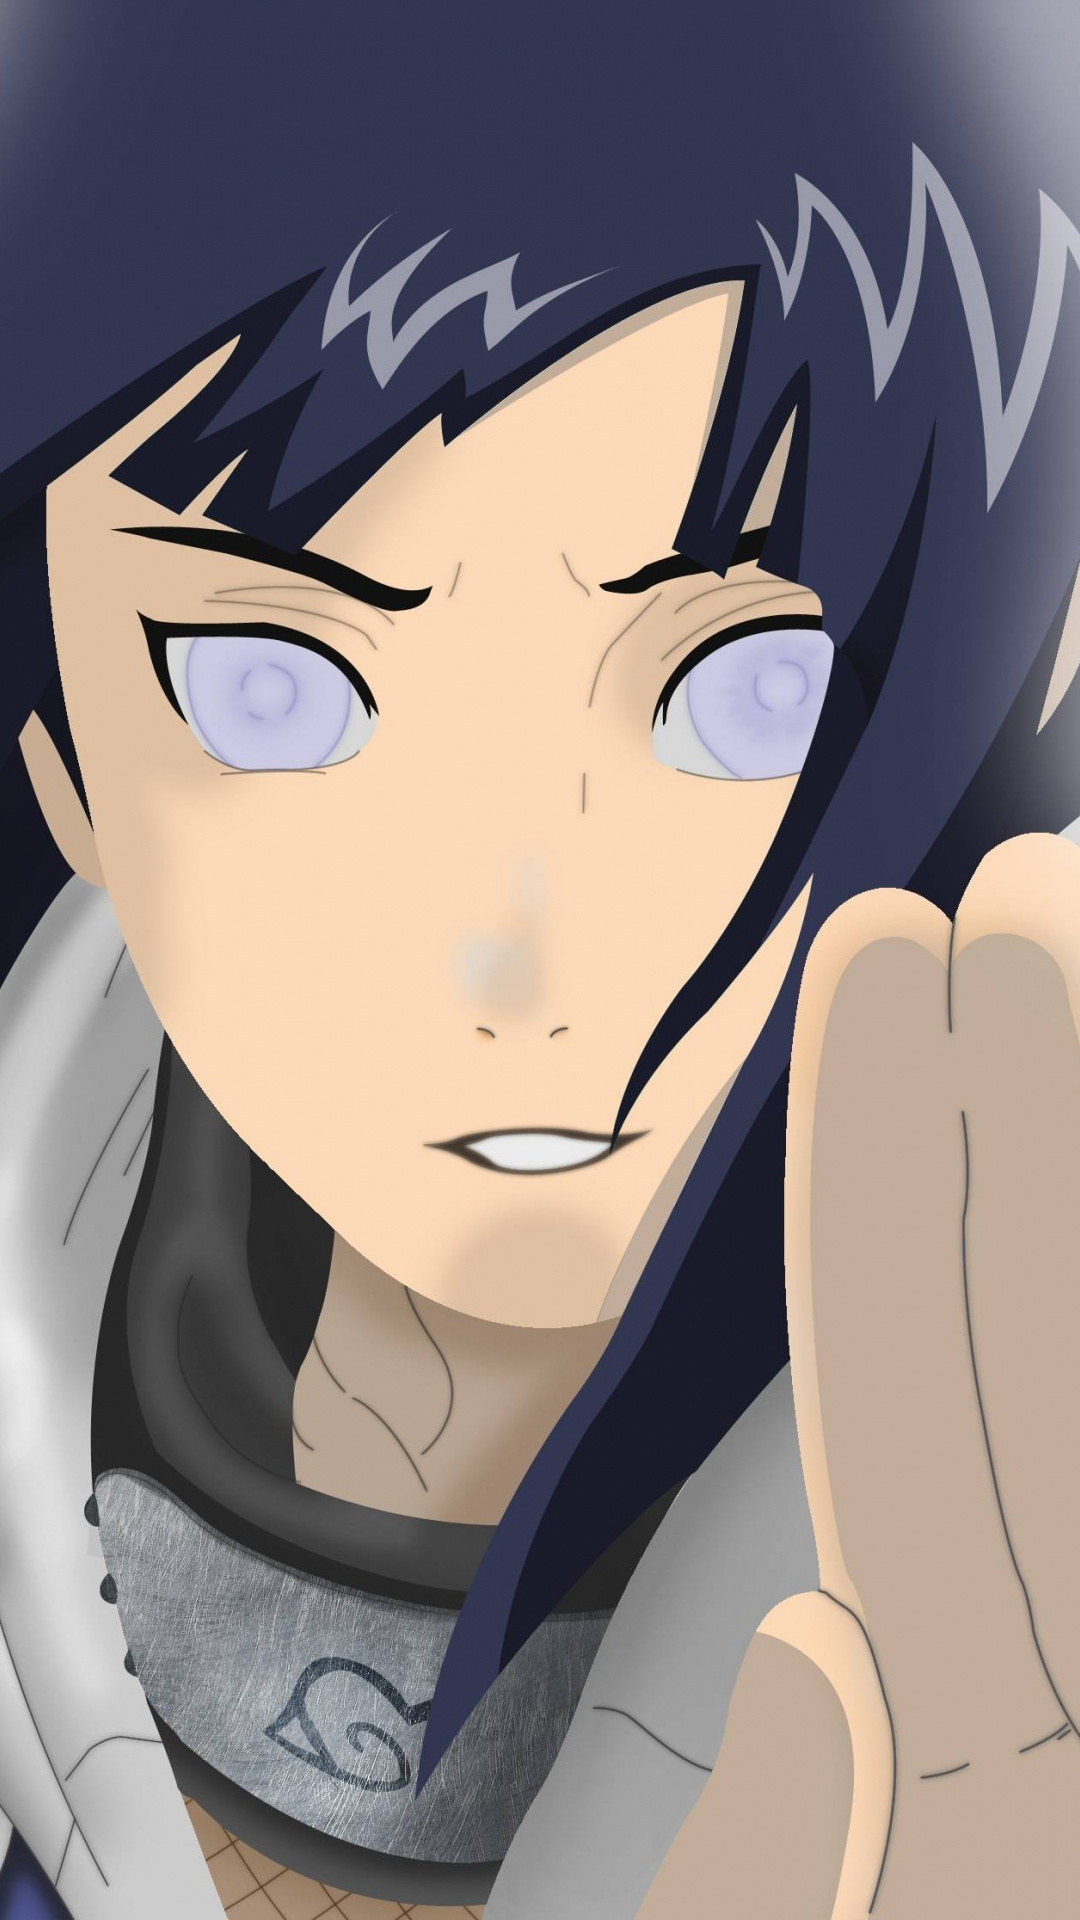 Hinata Hyuga, Naruto character, Mobile wallpaper, Artistic illustration, 1080x1920 Full HD Handy